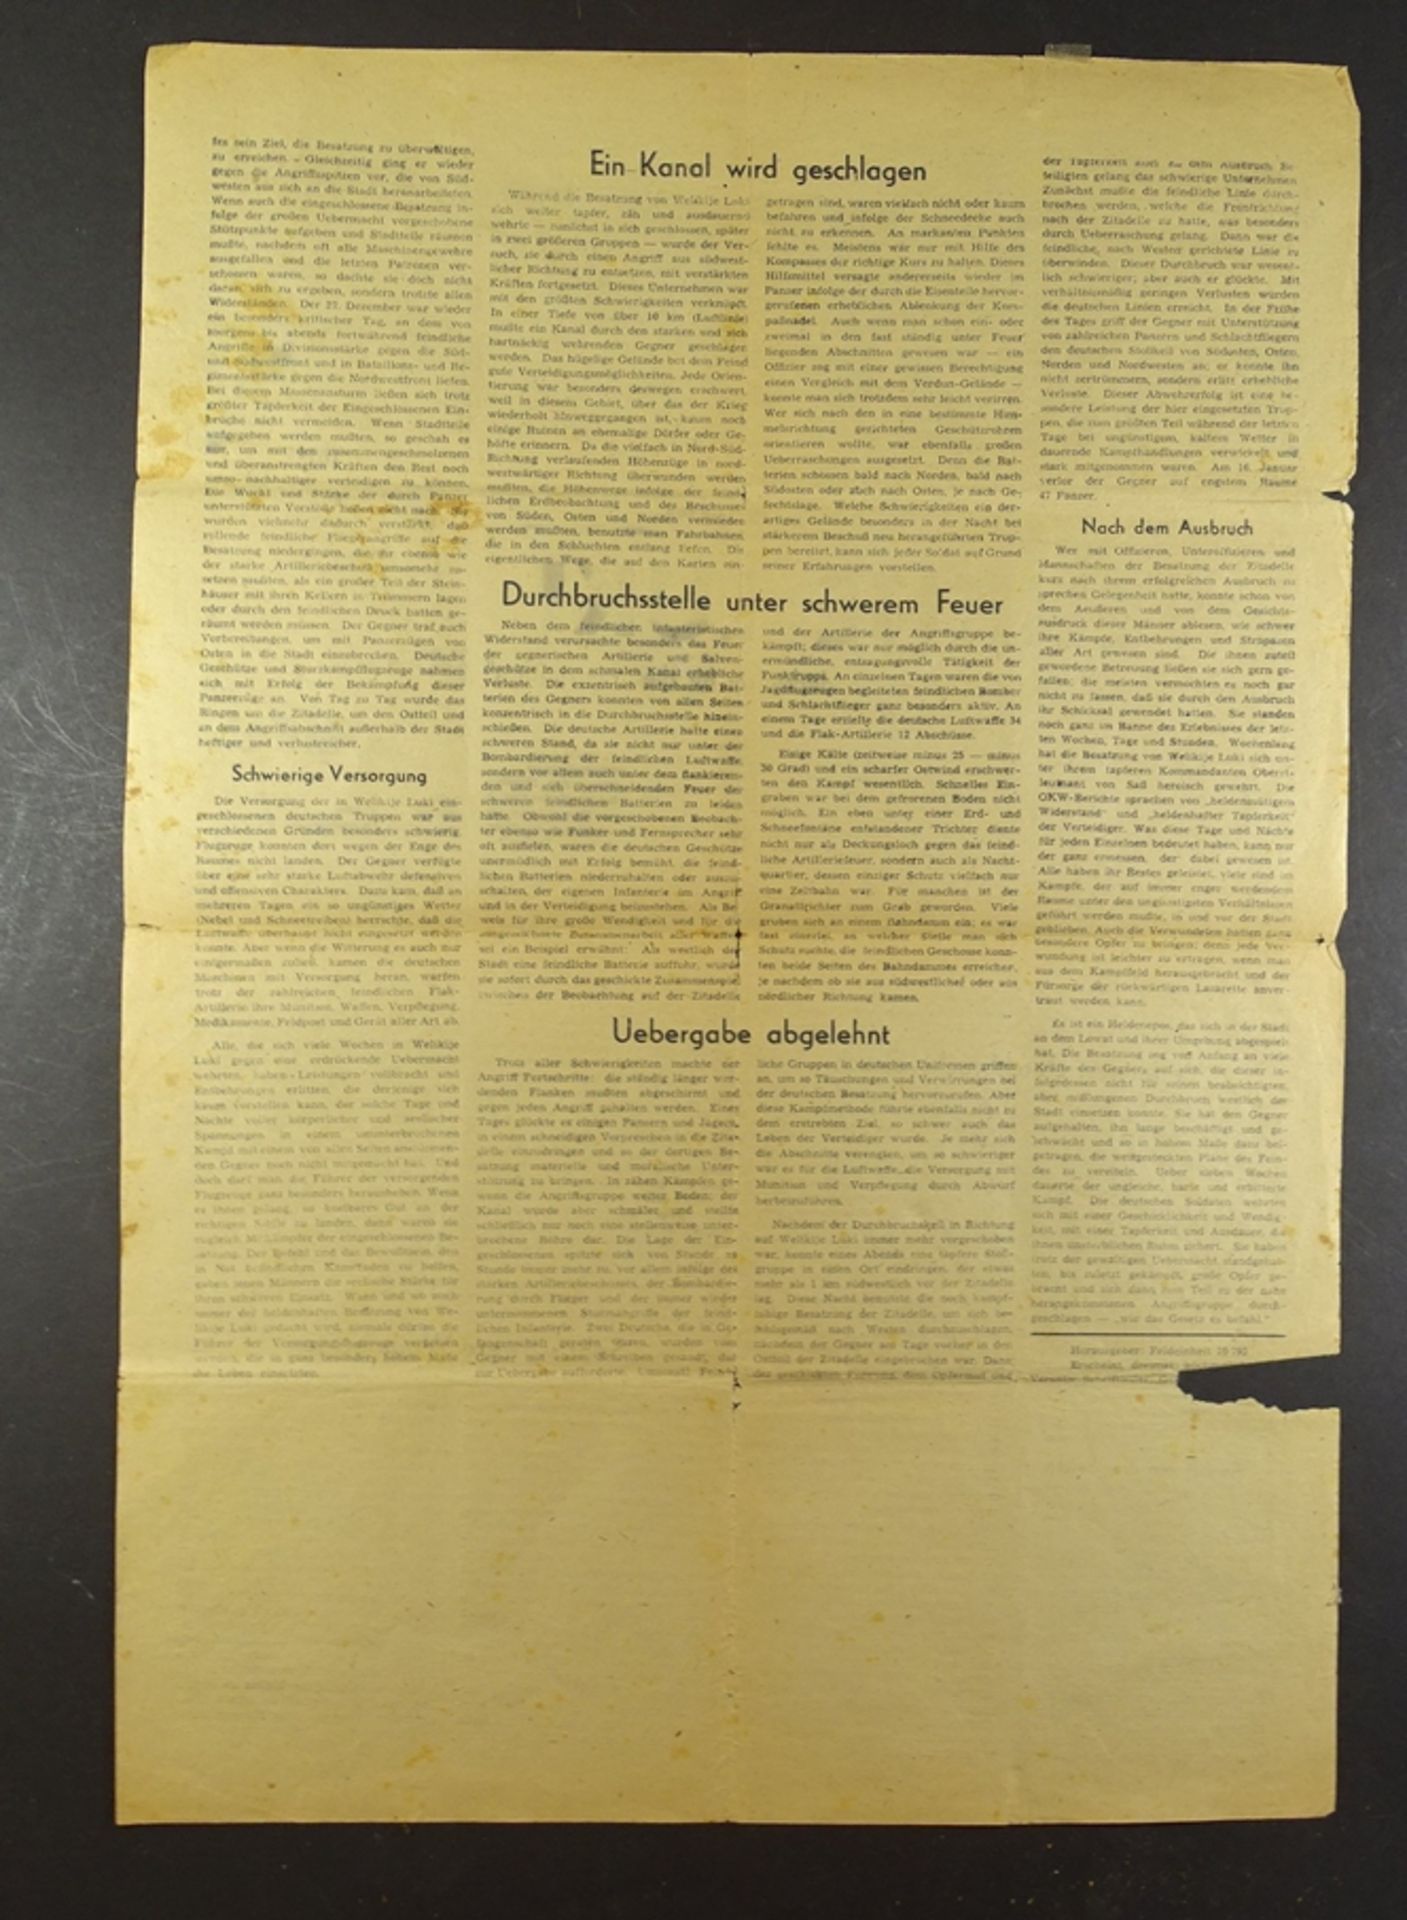 Die Panzerfaust, Feldzeitung einer Panzerarmee, 8.April 1943 (selten) - Bild 2 aus 2